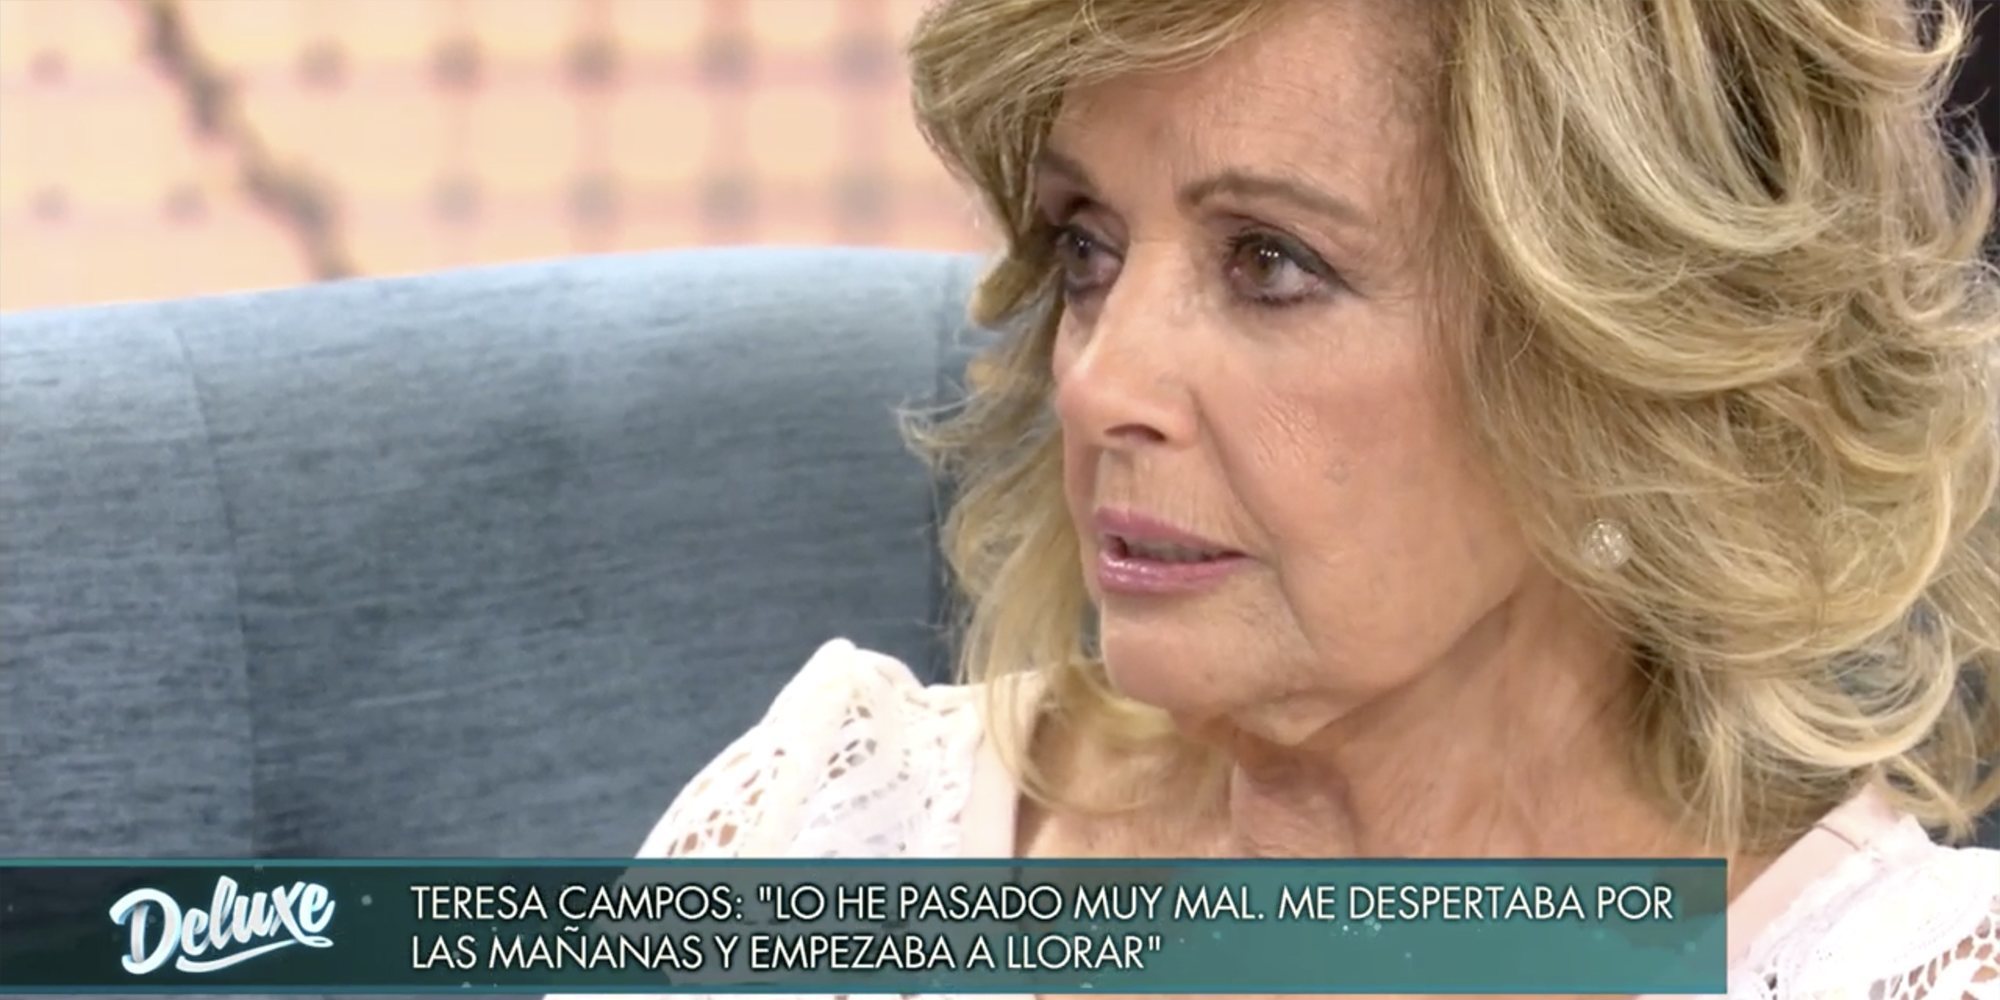 María Teresa se emociona al recordar su ruptura con Bigote: "Estaba muy mal, me despertaba y lloraba"